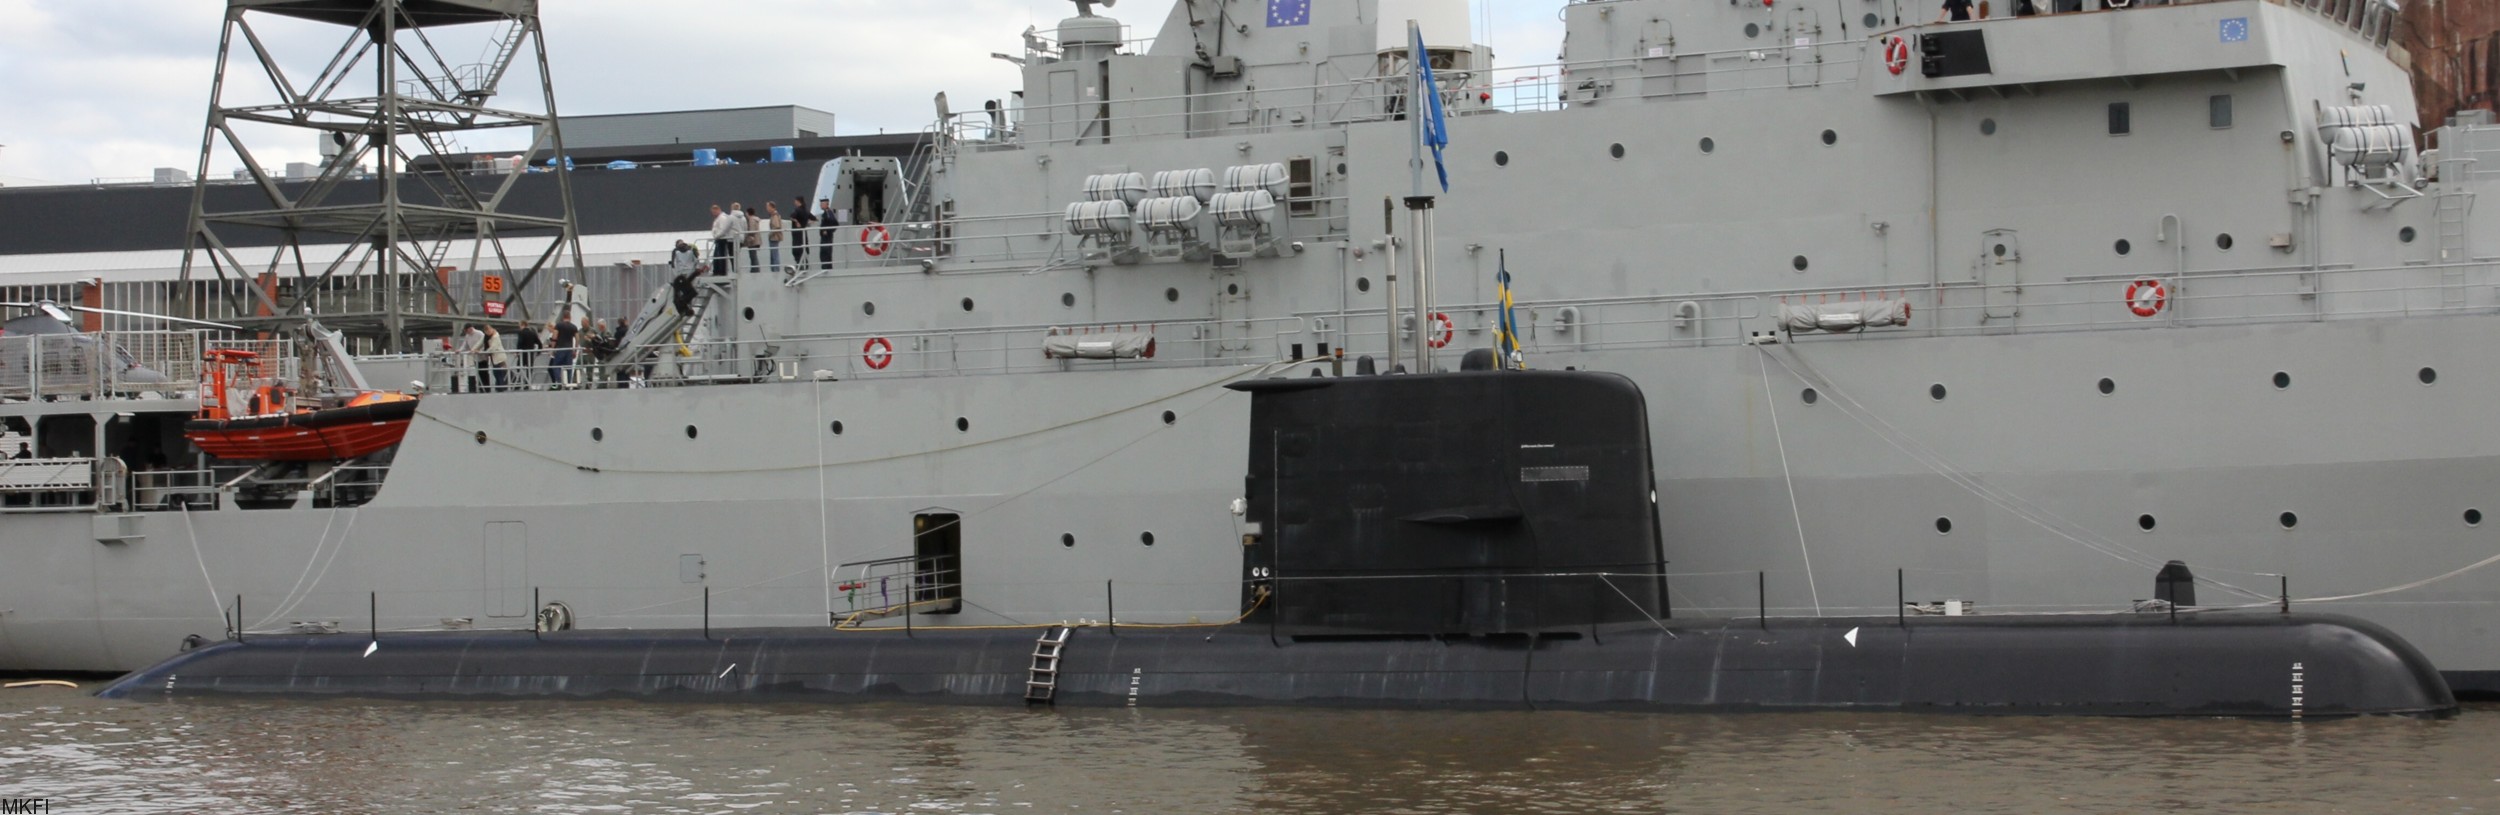 hswms hms gotland gtd class submarine ssk swedish navy svenska marinen försvarsmakten kockums 13